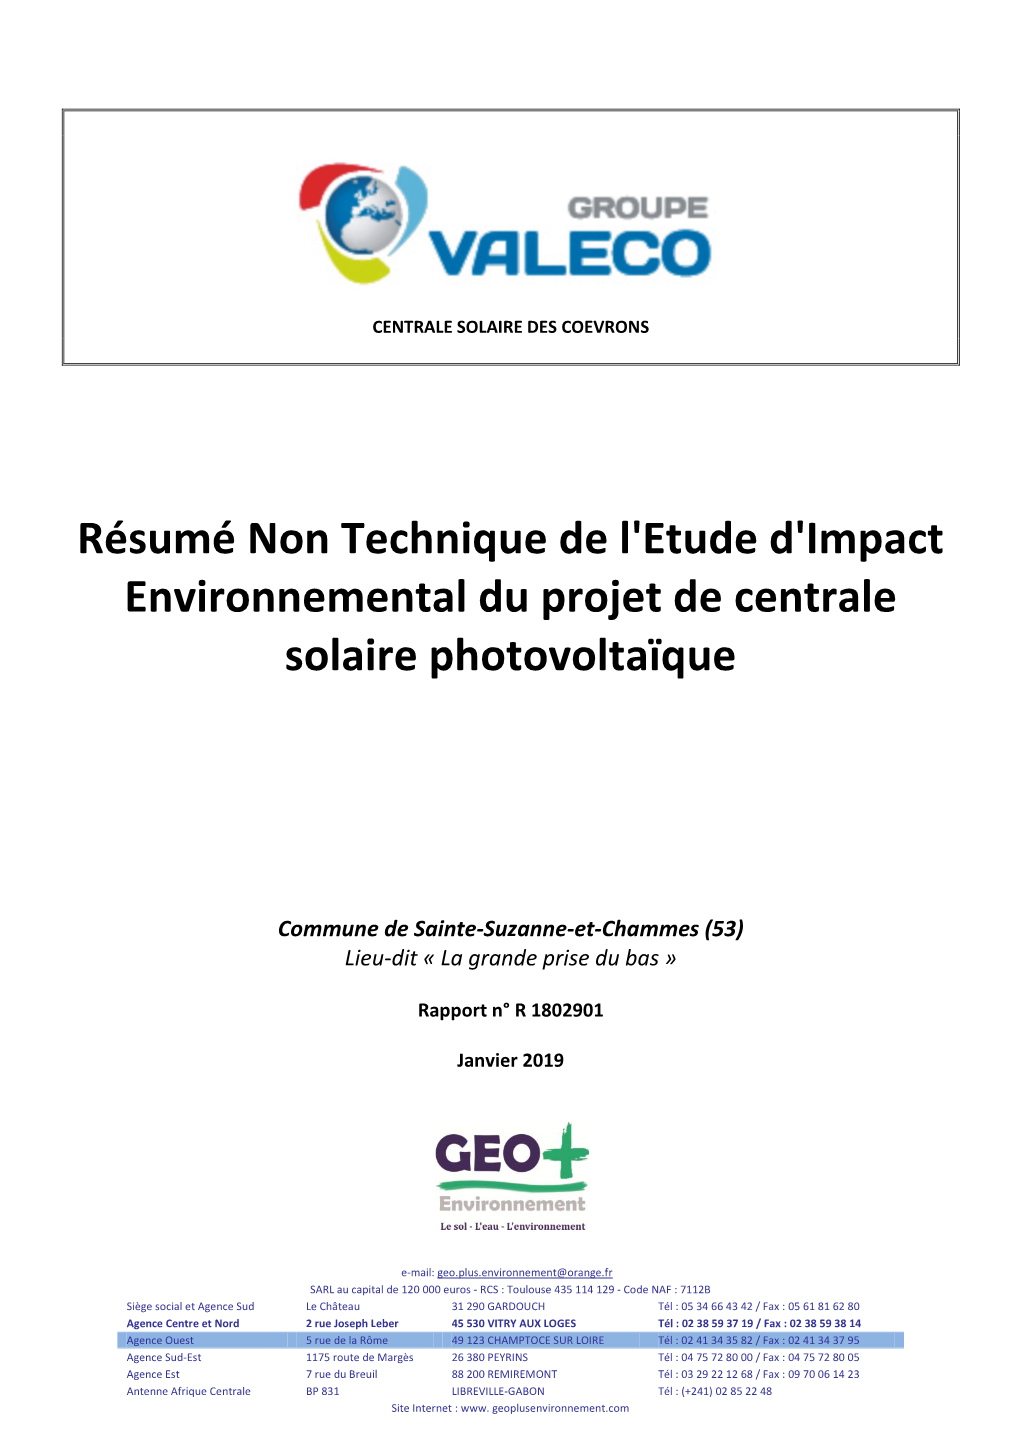 Résumé Non Technique De L'etude D'impact Environnemental Du Projet De Centrale Solaire Photovoltaïque